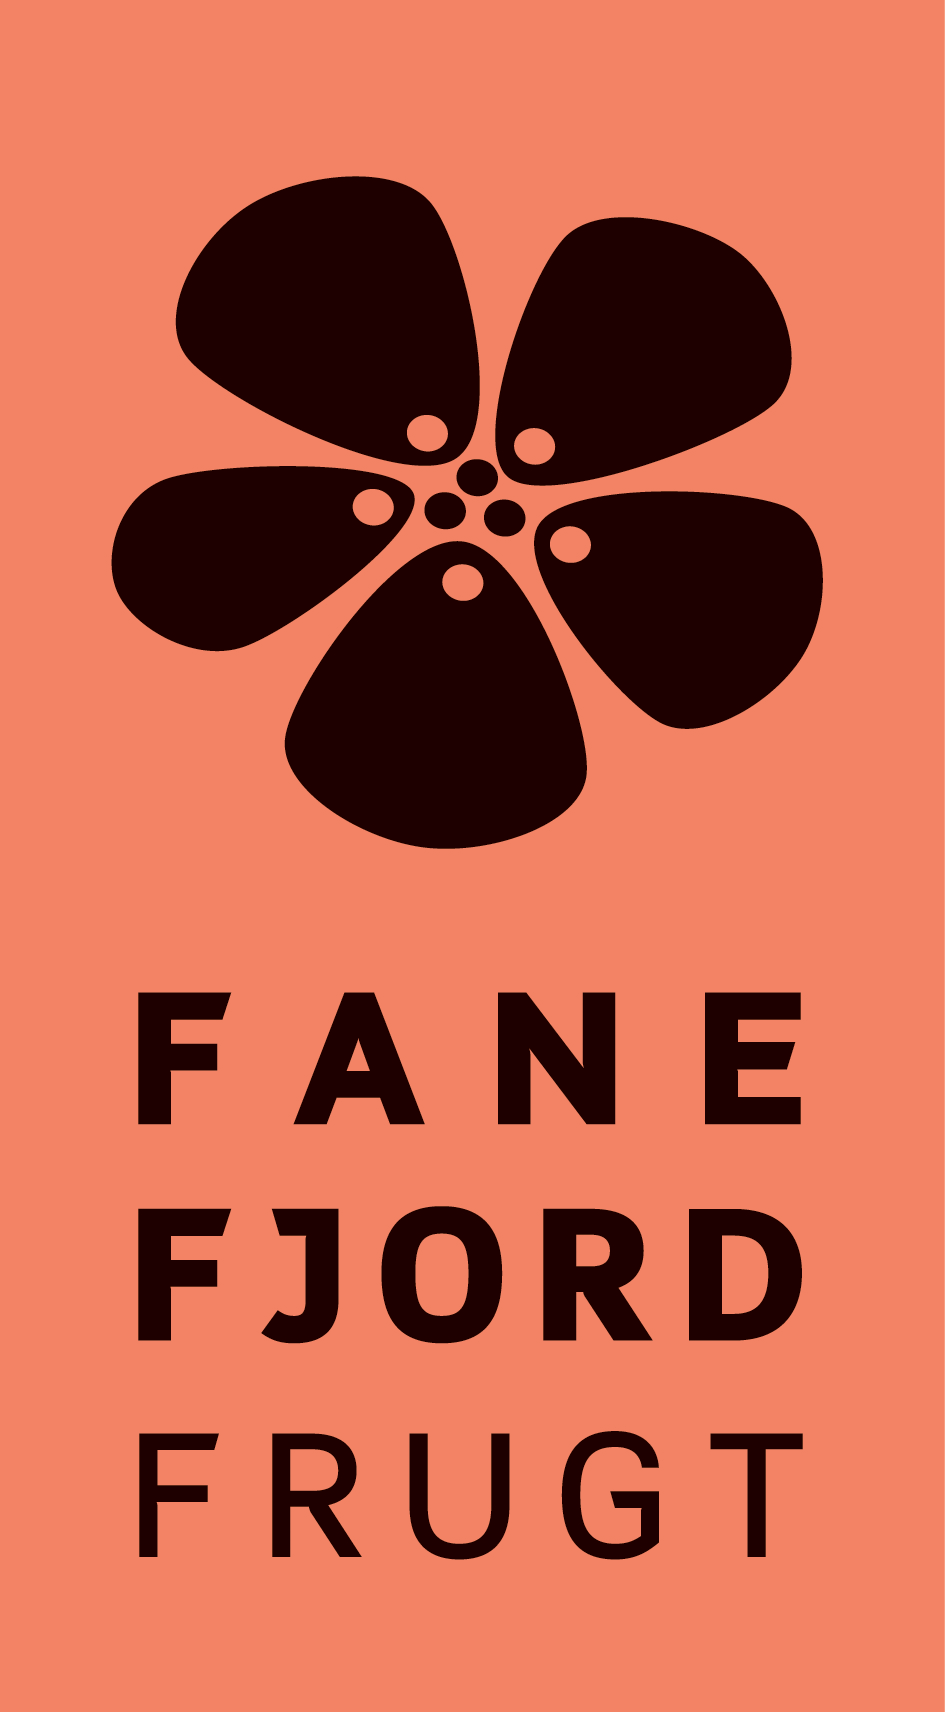 Fanefjord Frugt Logo